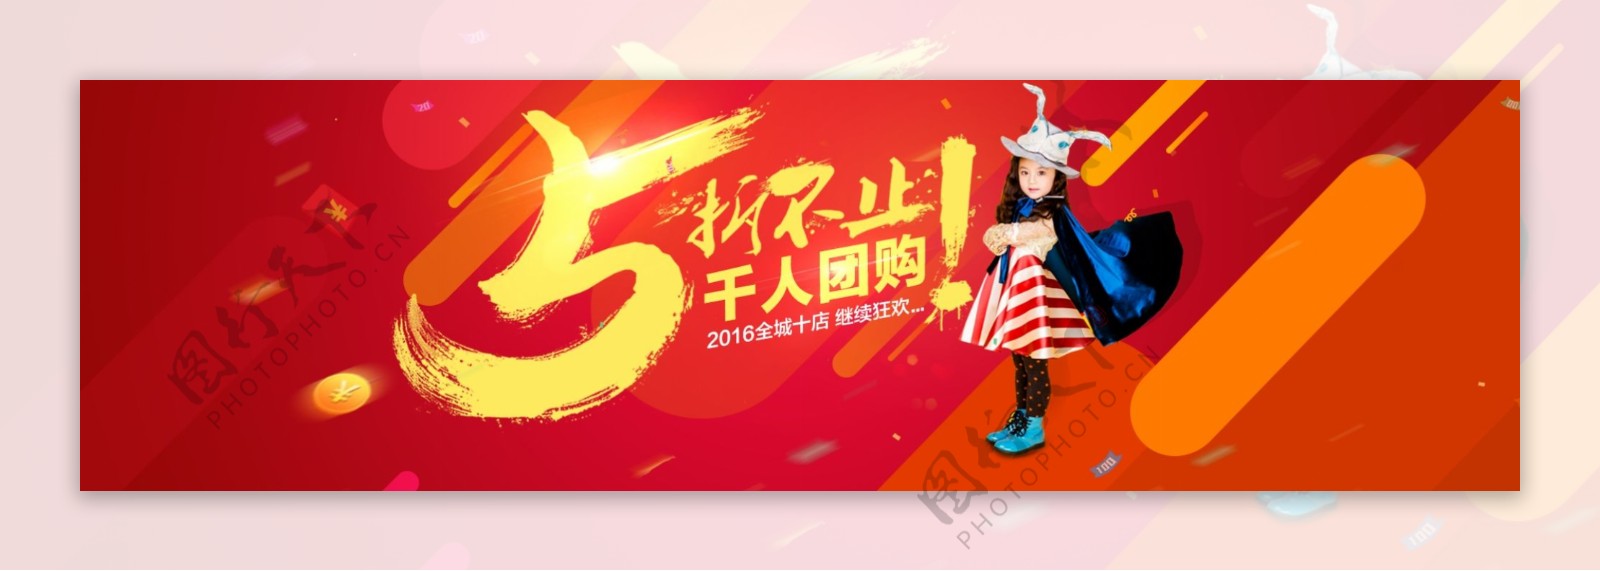 五折千人团购海报广告图淘宝电商banner